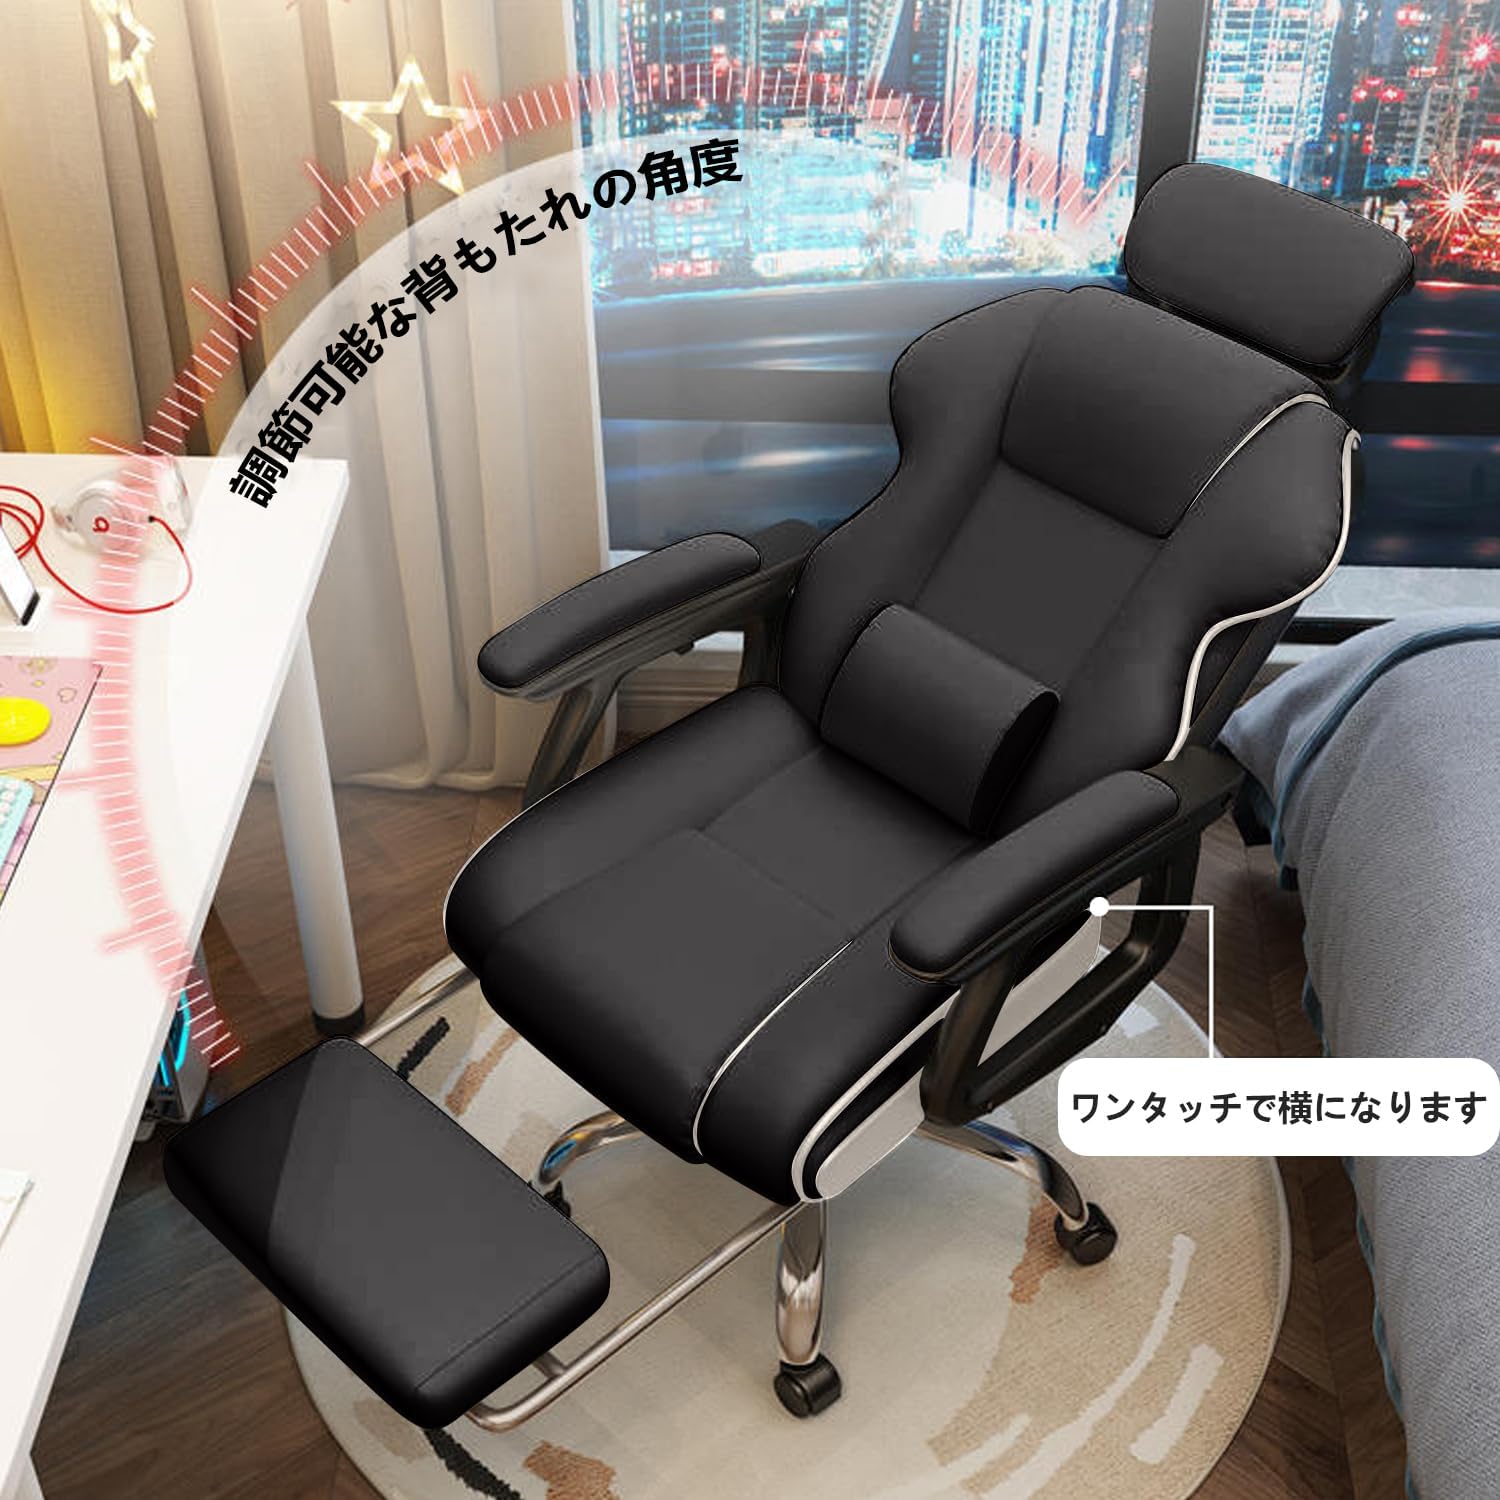 社長椅子 ゲーミングチェア デスクチェア 360度回転昇降機能 リクライニングチェア 肉厚座面 事務椅子 ブラック ハイバック 人間工学 在宅ワーク  勉強 仕事